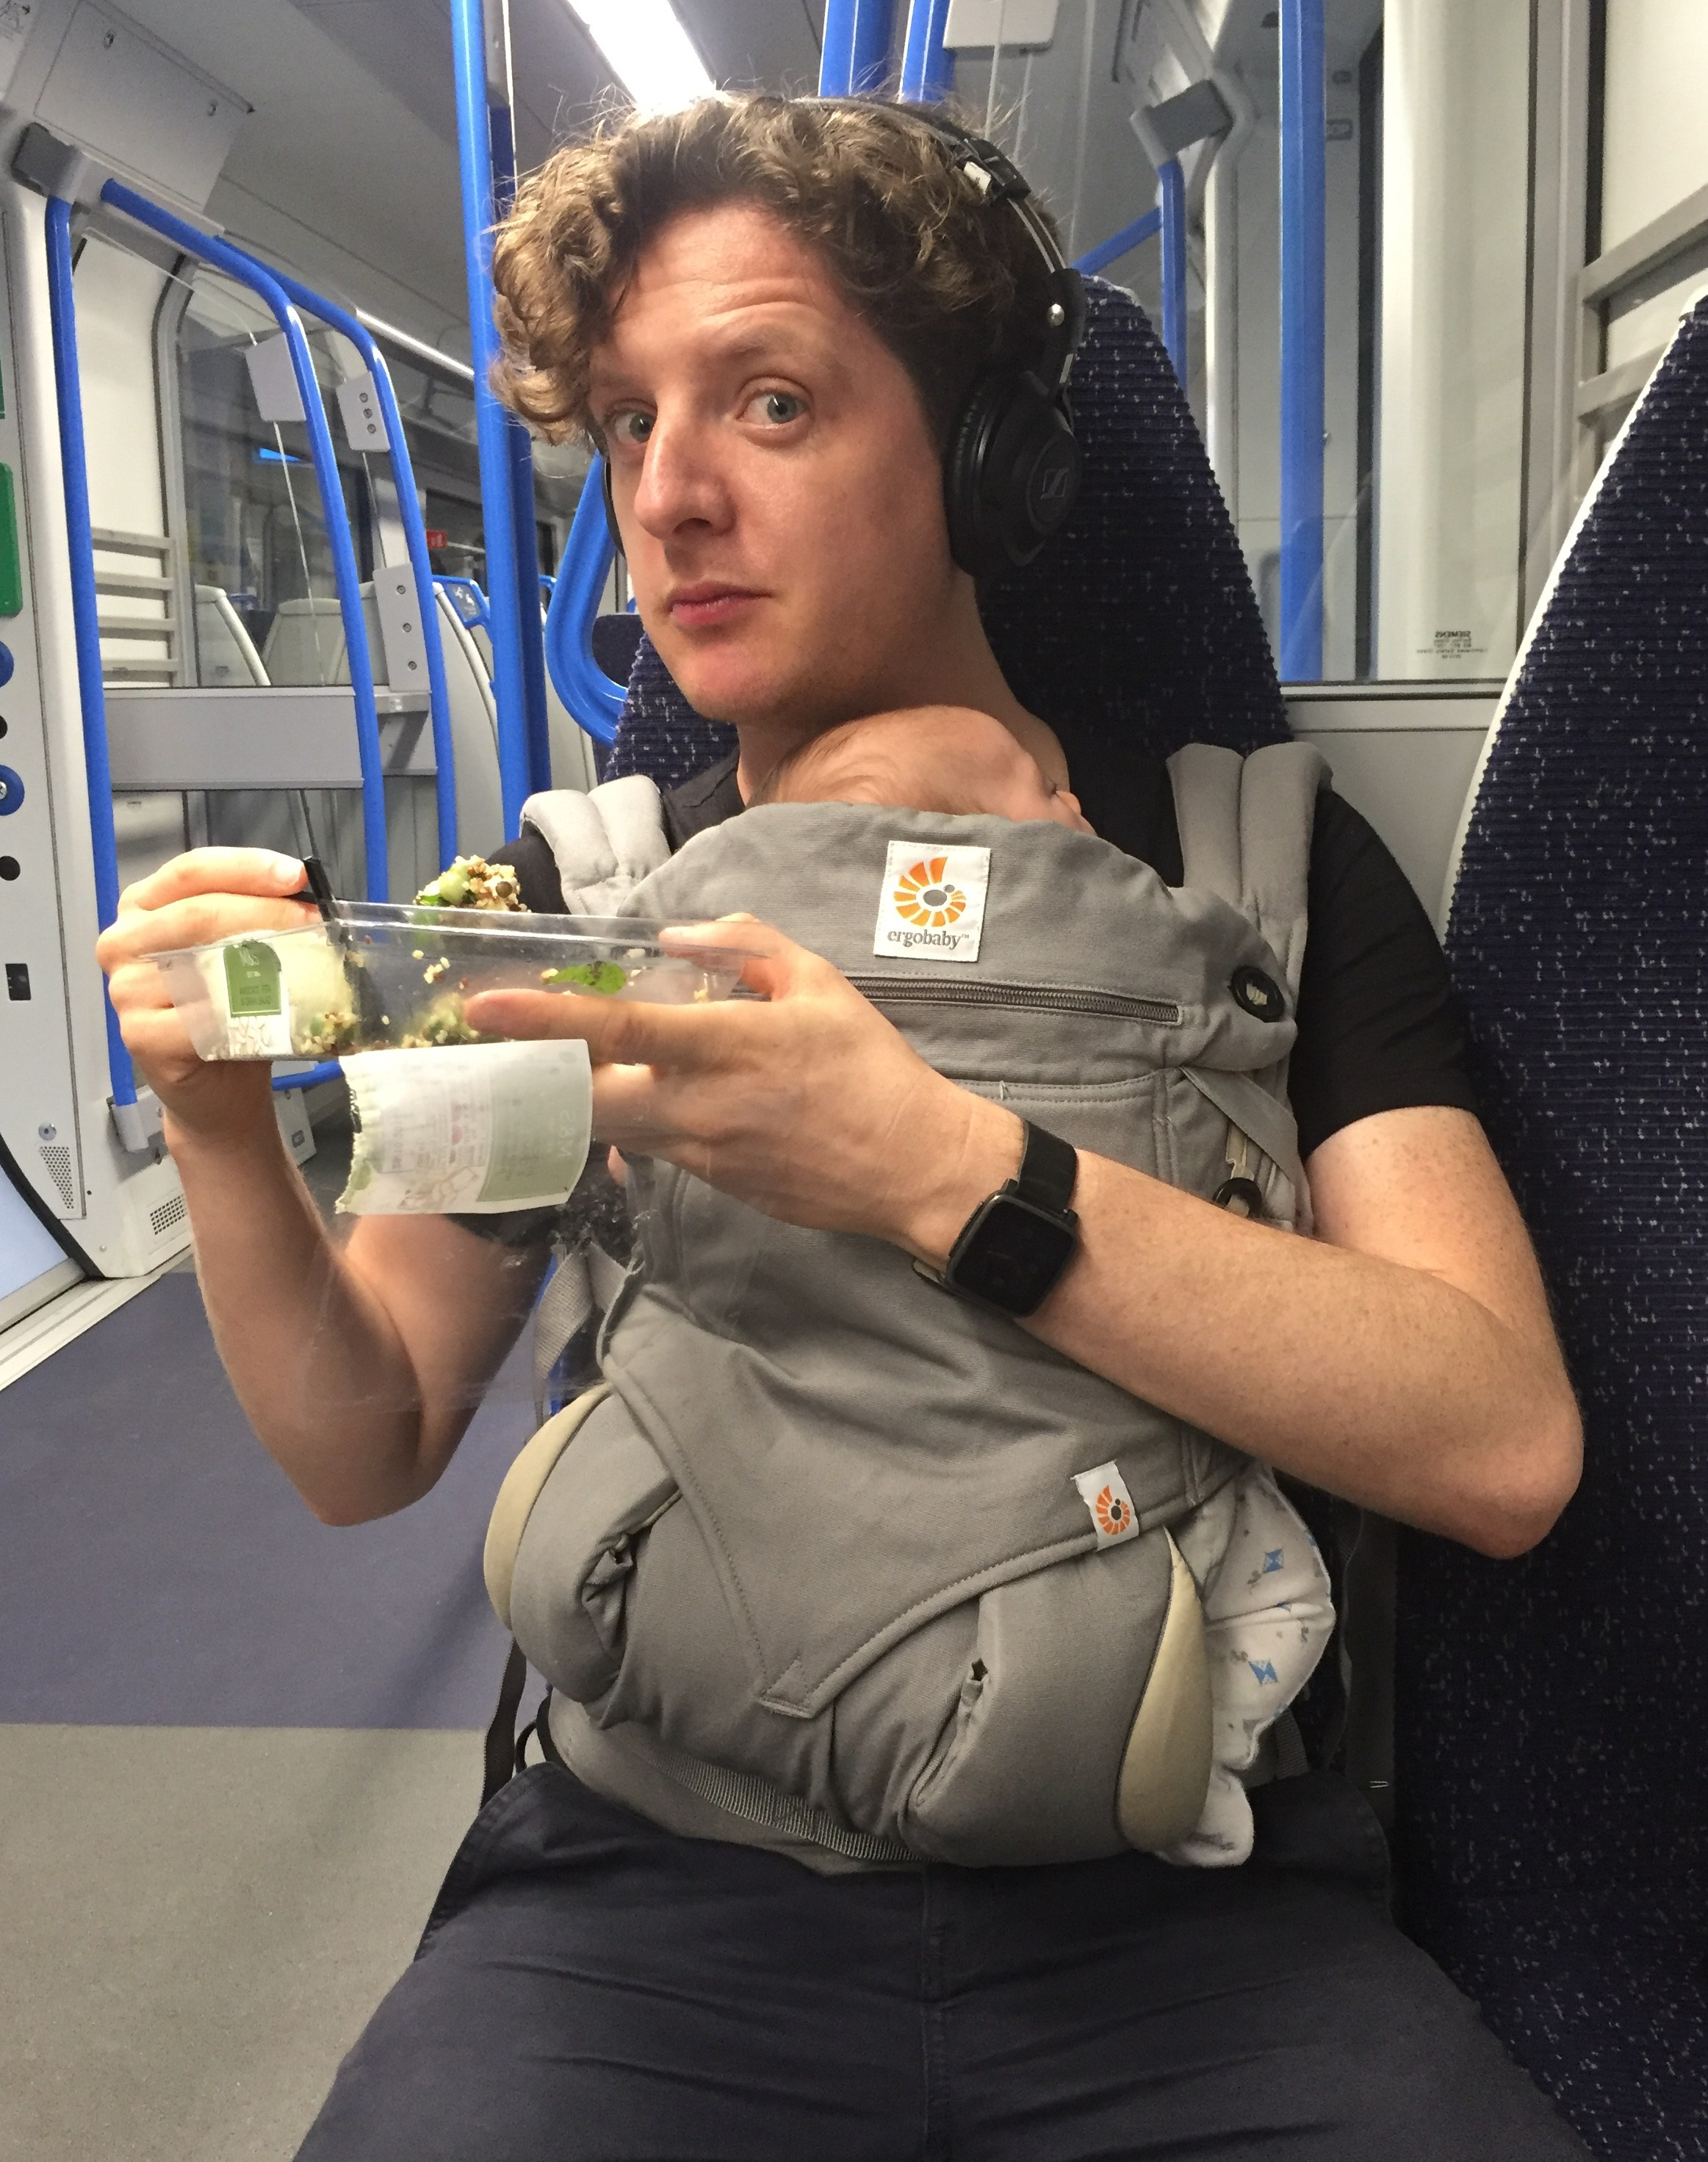 A man with a baby in a sling eats a salad on a train.